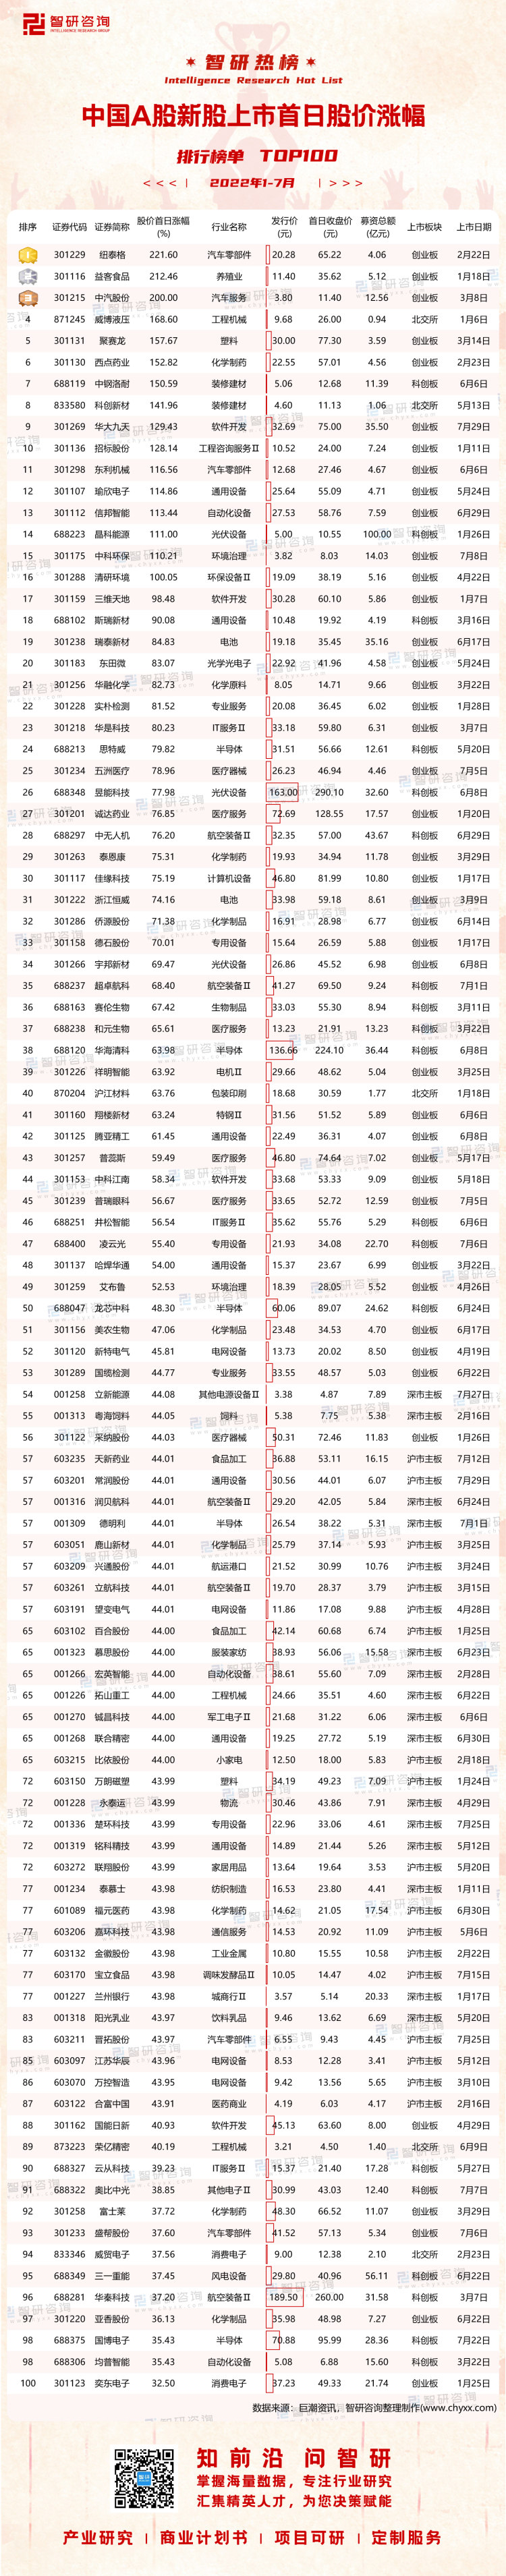 0824：中国A股新股上市首日股价涨幅-带水印带二维码（王钦）_画板 1